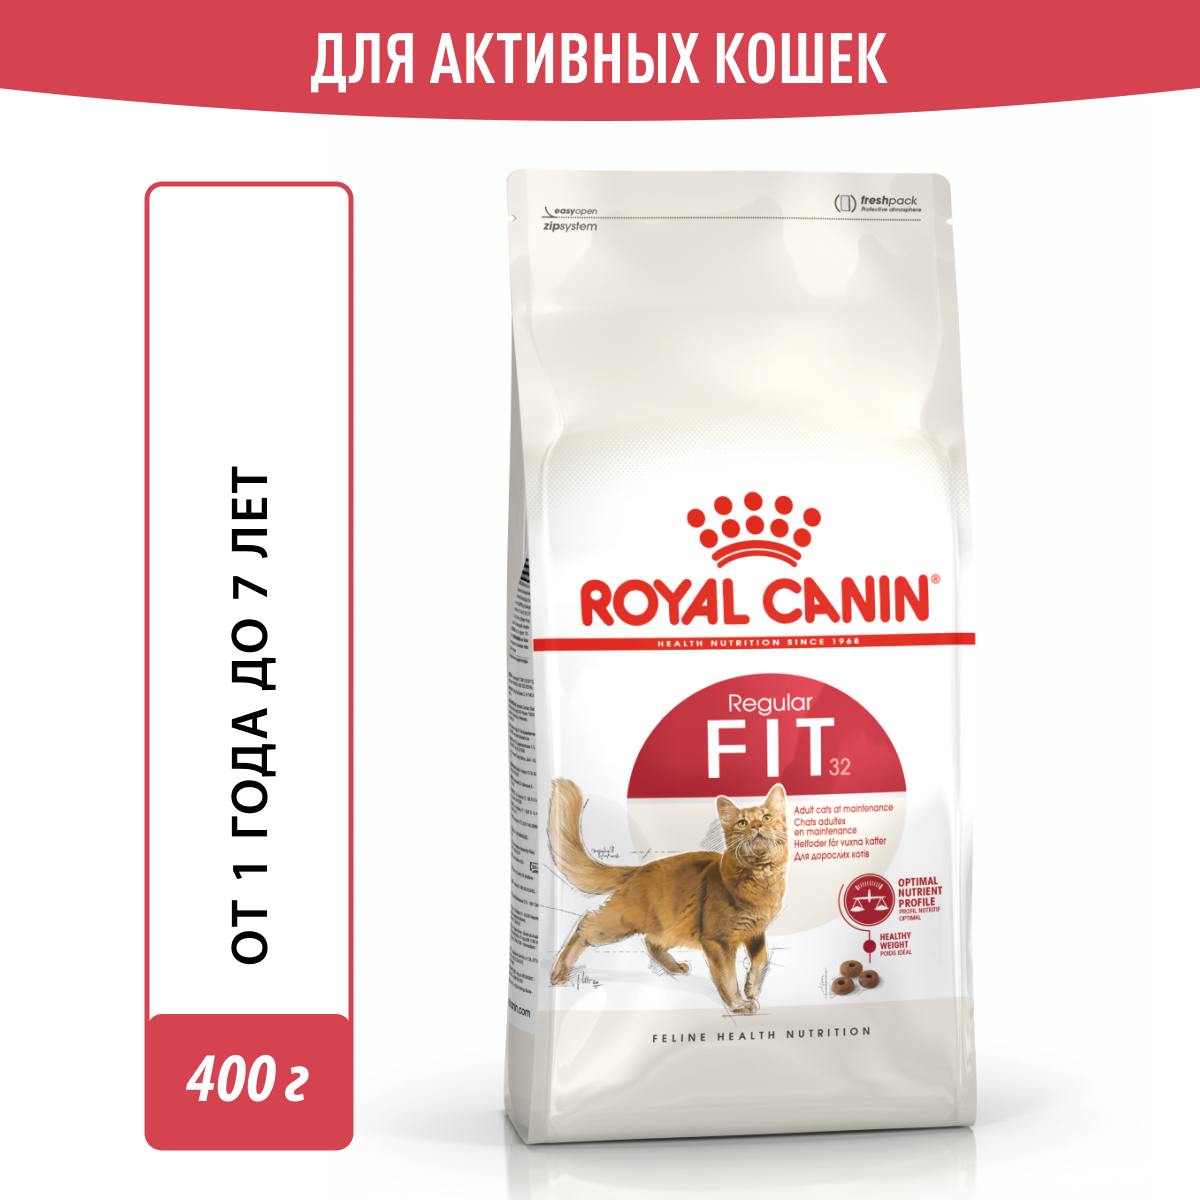 Royal Canin Сухой корм RC Fit для кошек,с умеренной активностью, 400 г